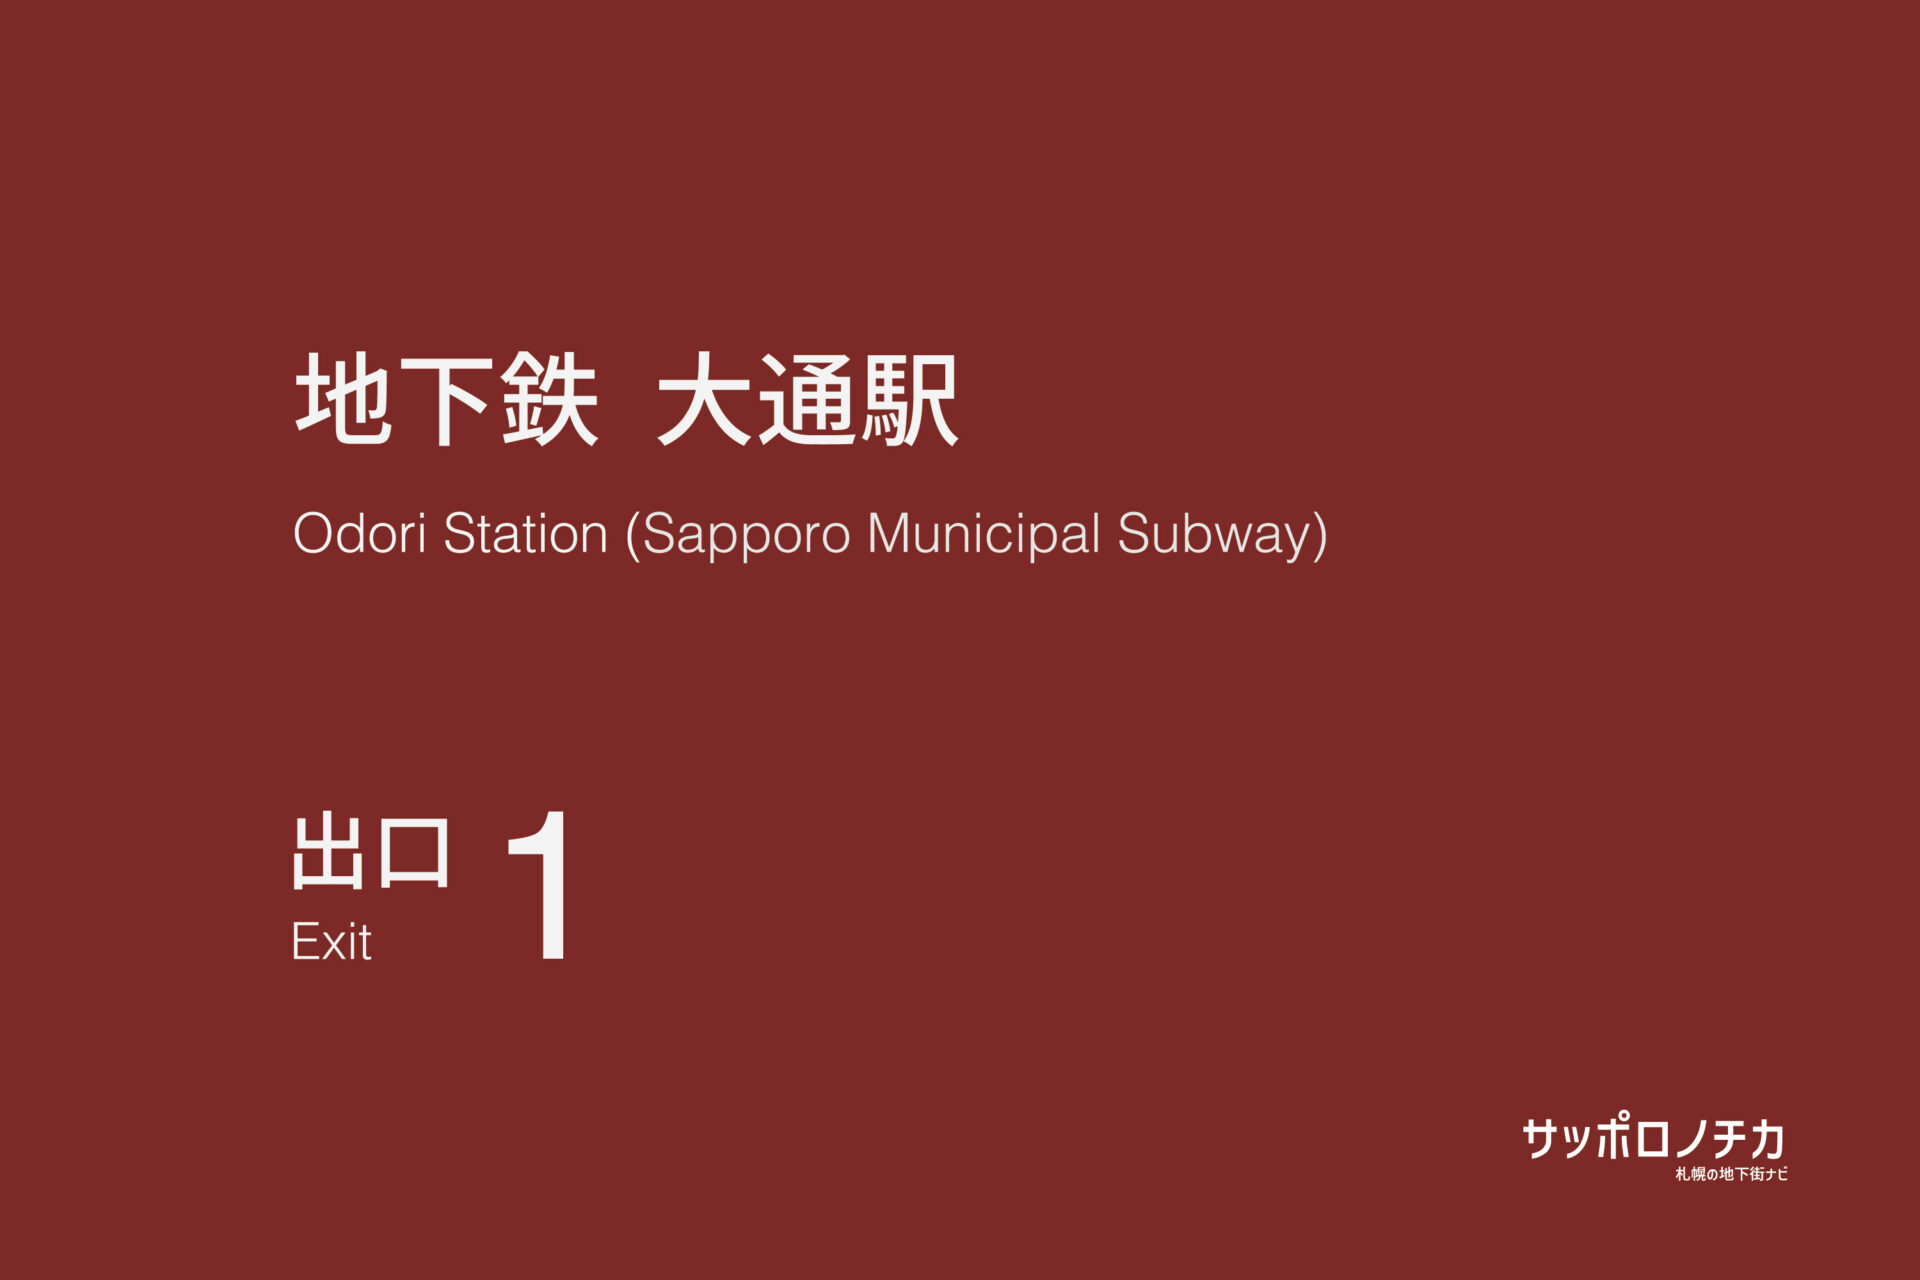 札幌市営地下鉄「大通駅」1番出口